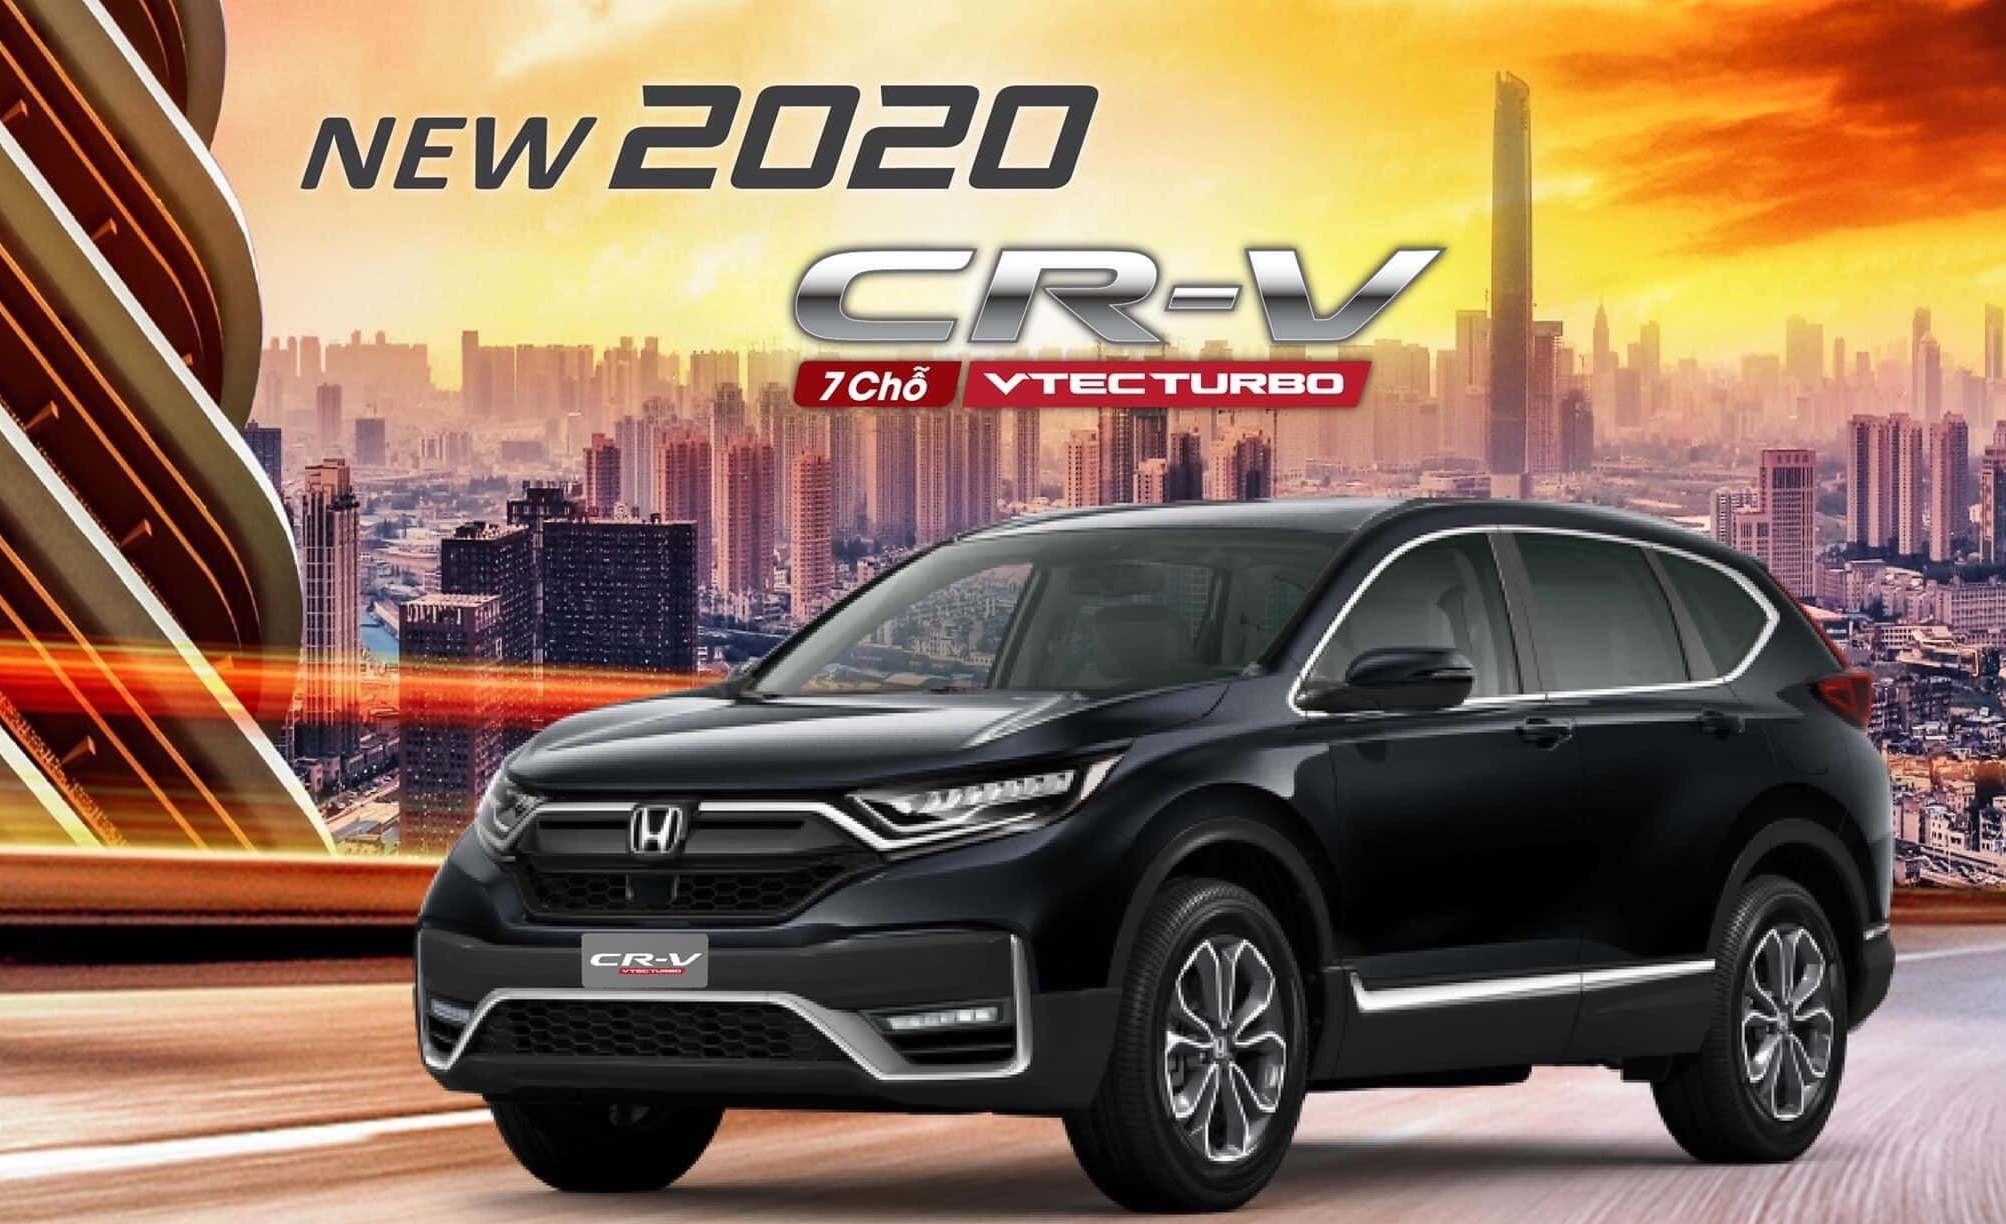 Review Xe Crv 2020 - Hình ảnh, chất lượng và giá cả